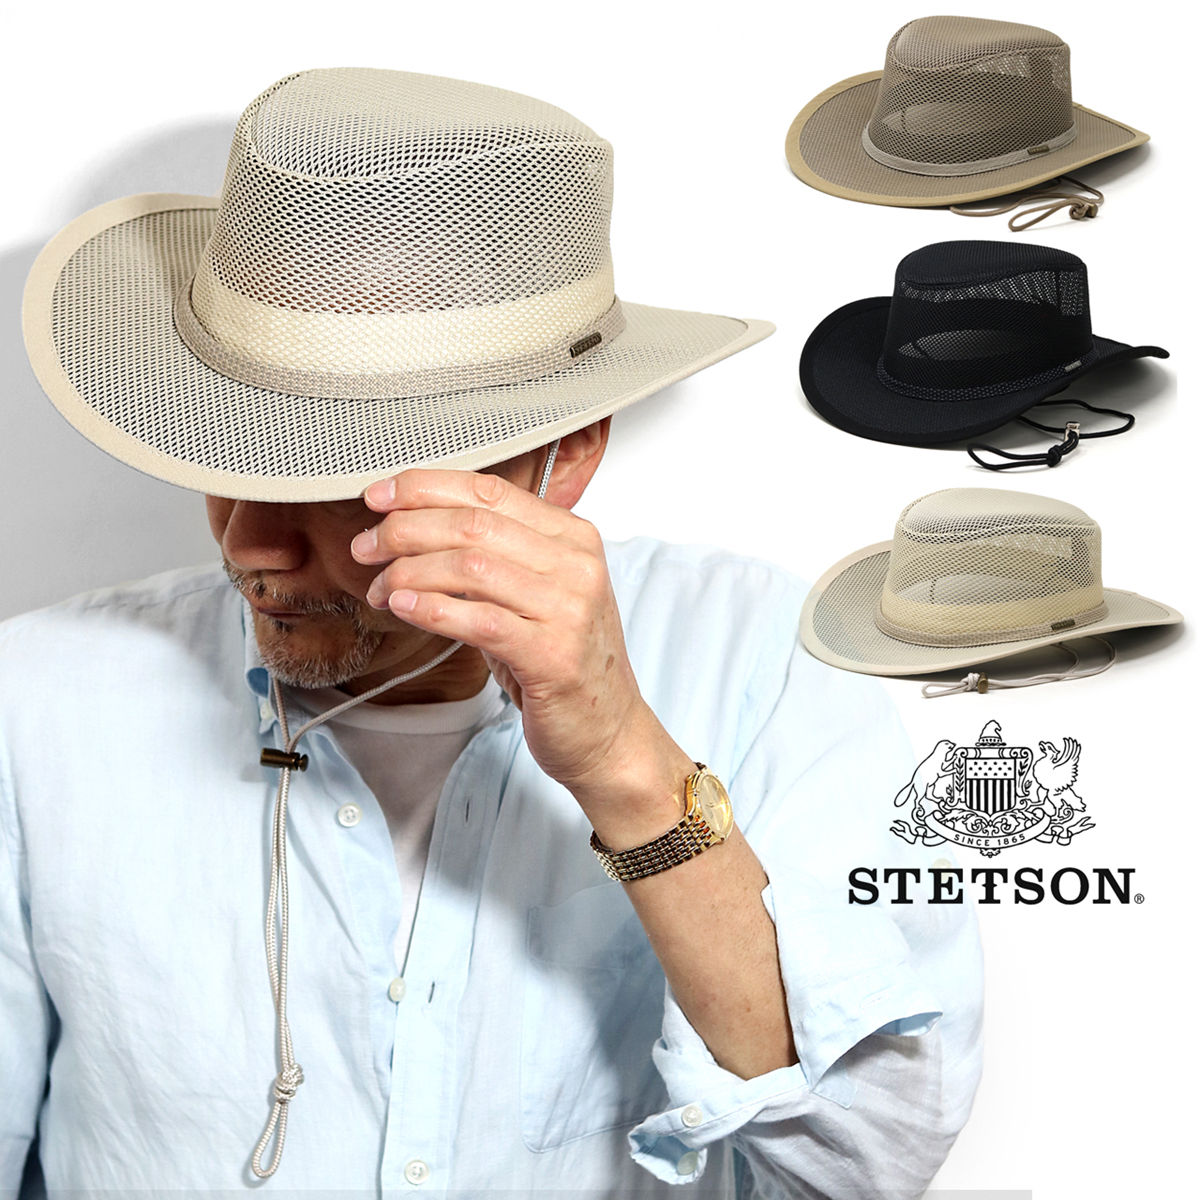 ステットソン 帽子 メンズ 涼しい 帽子 大きいサイズ メンズ メッシュ STETSON ステットソン つば広 ハット UPF50+ 紫外線対策 クールマックス ブランド 紳士帽子 全3色 / マッシュルーム/ブラック/クレイ 父の日 ギフト 誕生日 プレゼント ギフト包装無料 送料無料 敬老の日 [ bucket hat ]